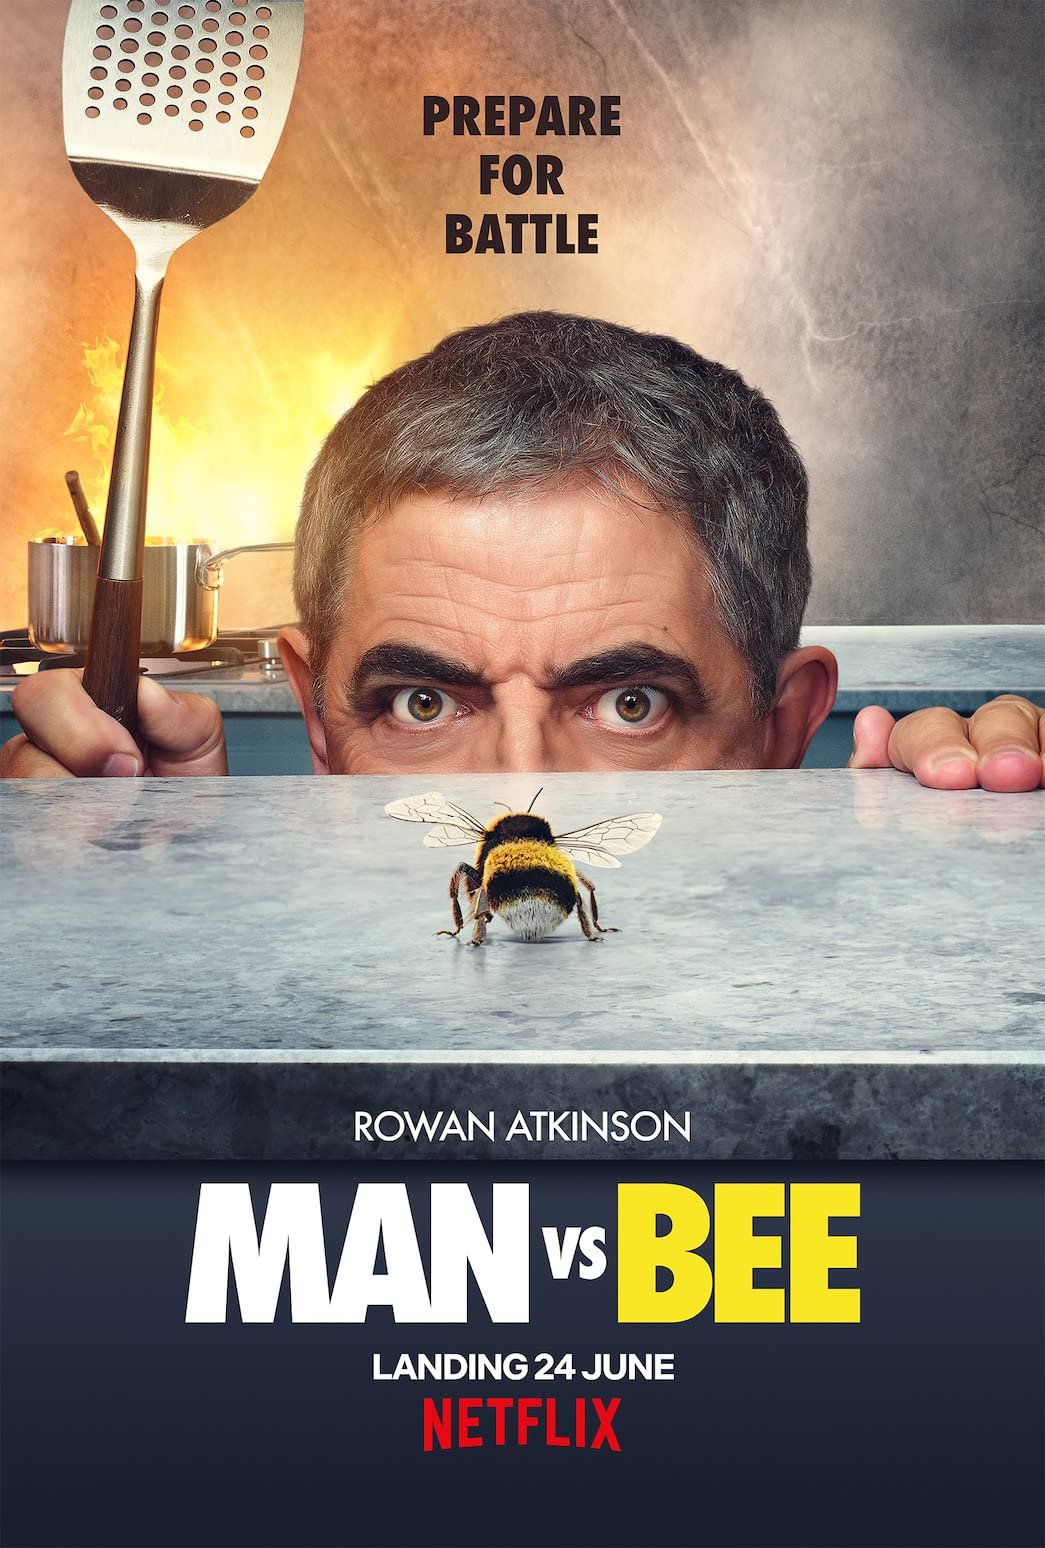 Man vs. Bee Season 1 recapMan vs. Bee Season 1 recap